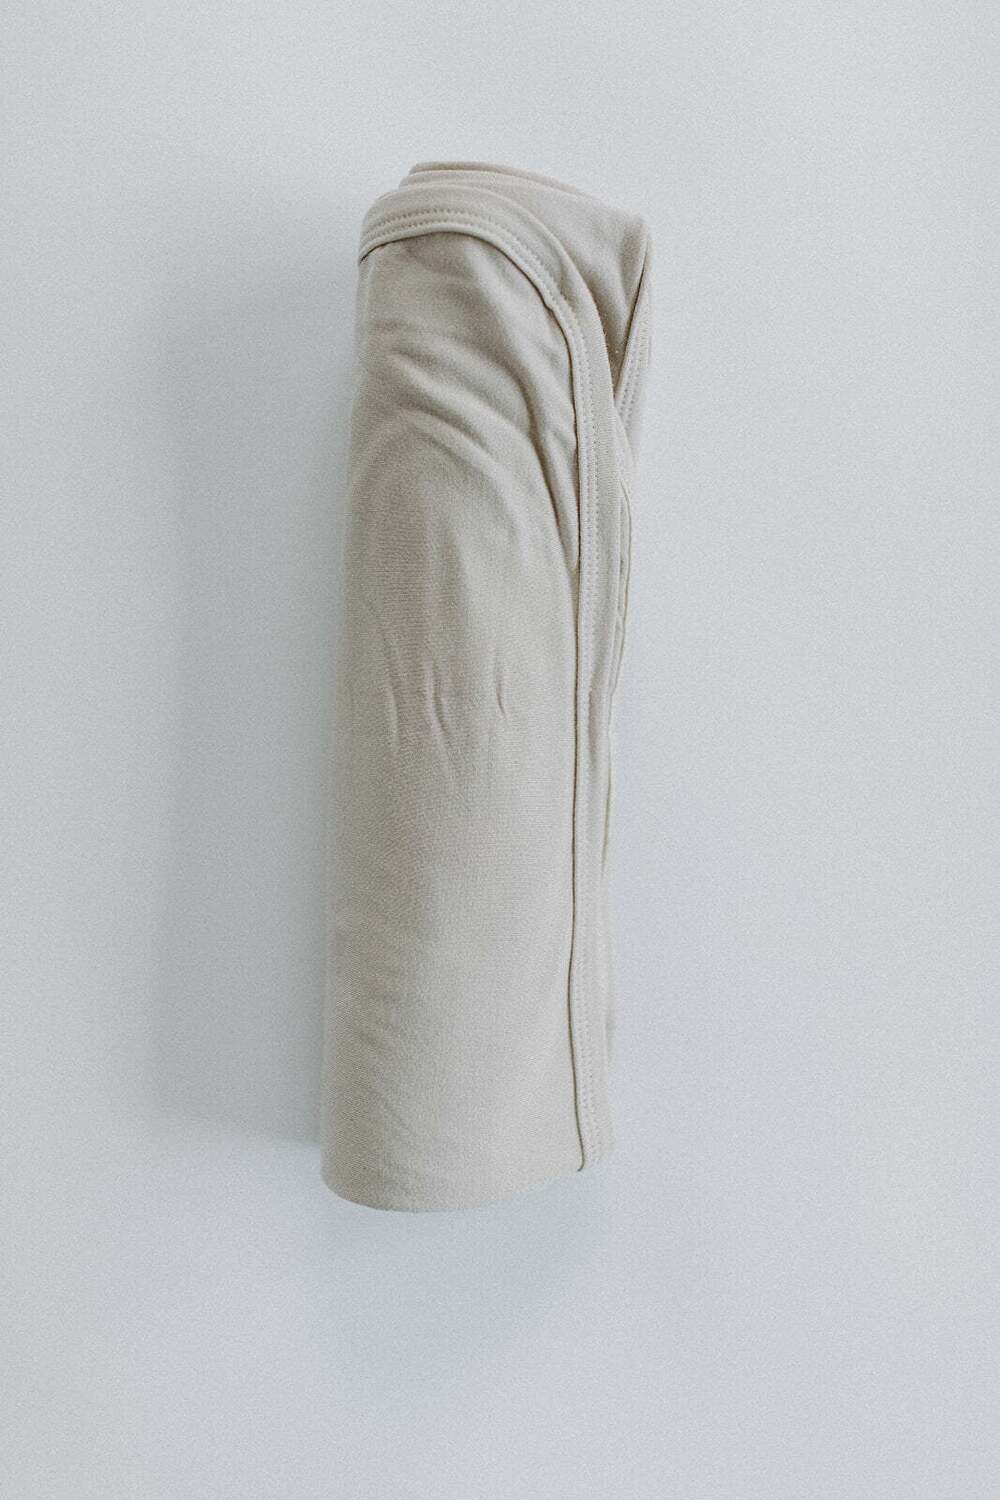 Swaddle Blanket, Color: Oat, Size: O/S